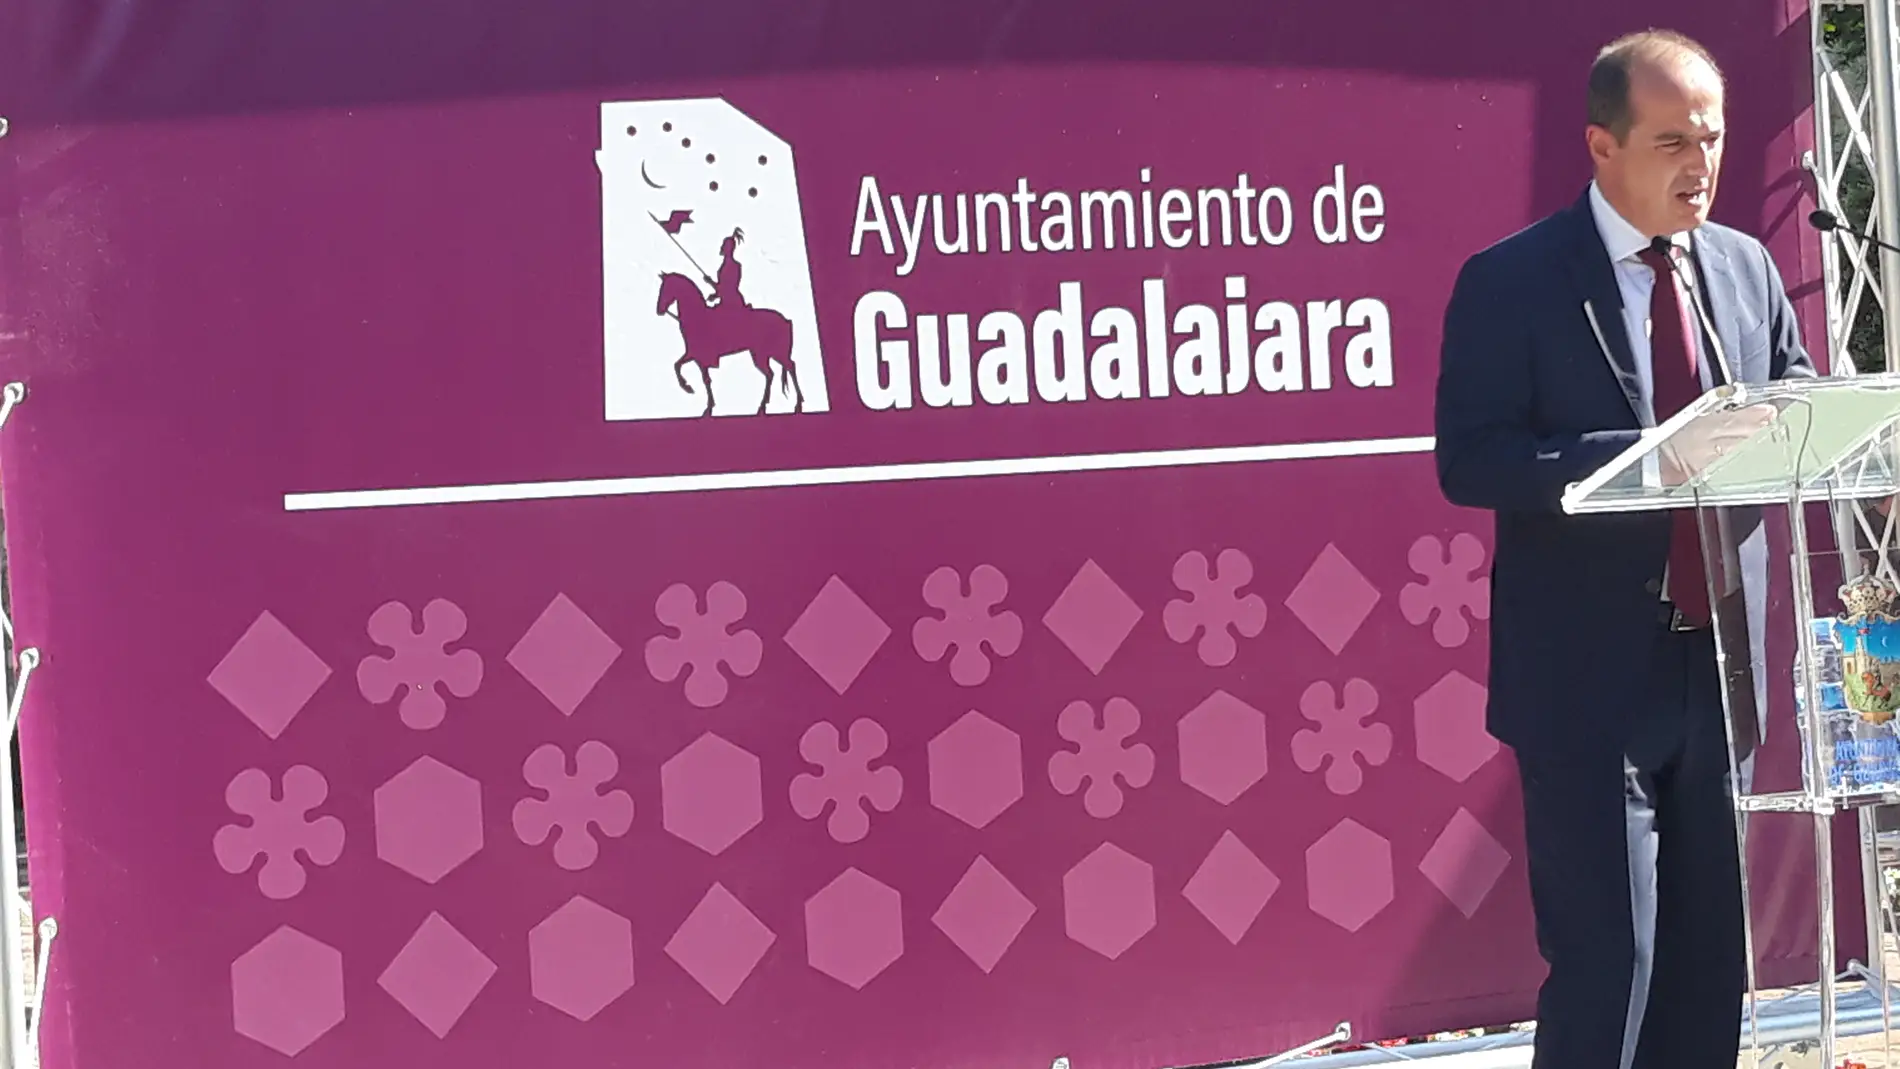 El Ayuntamiento de Guadalajara estrena nueva imagen